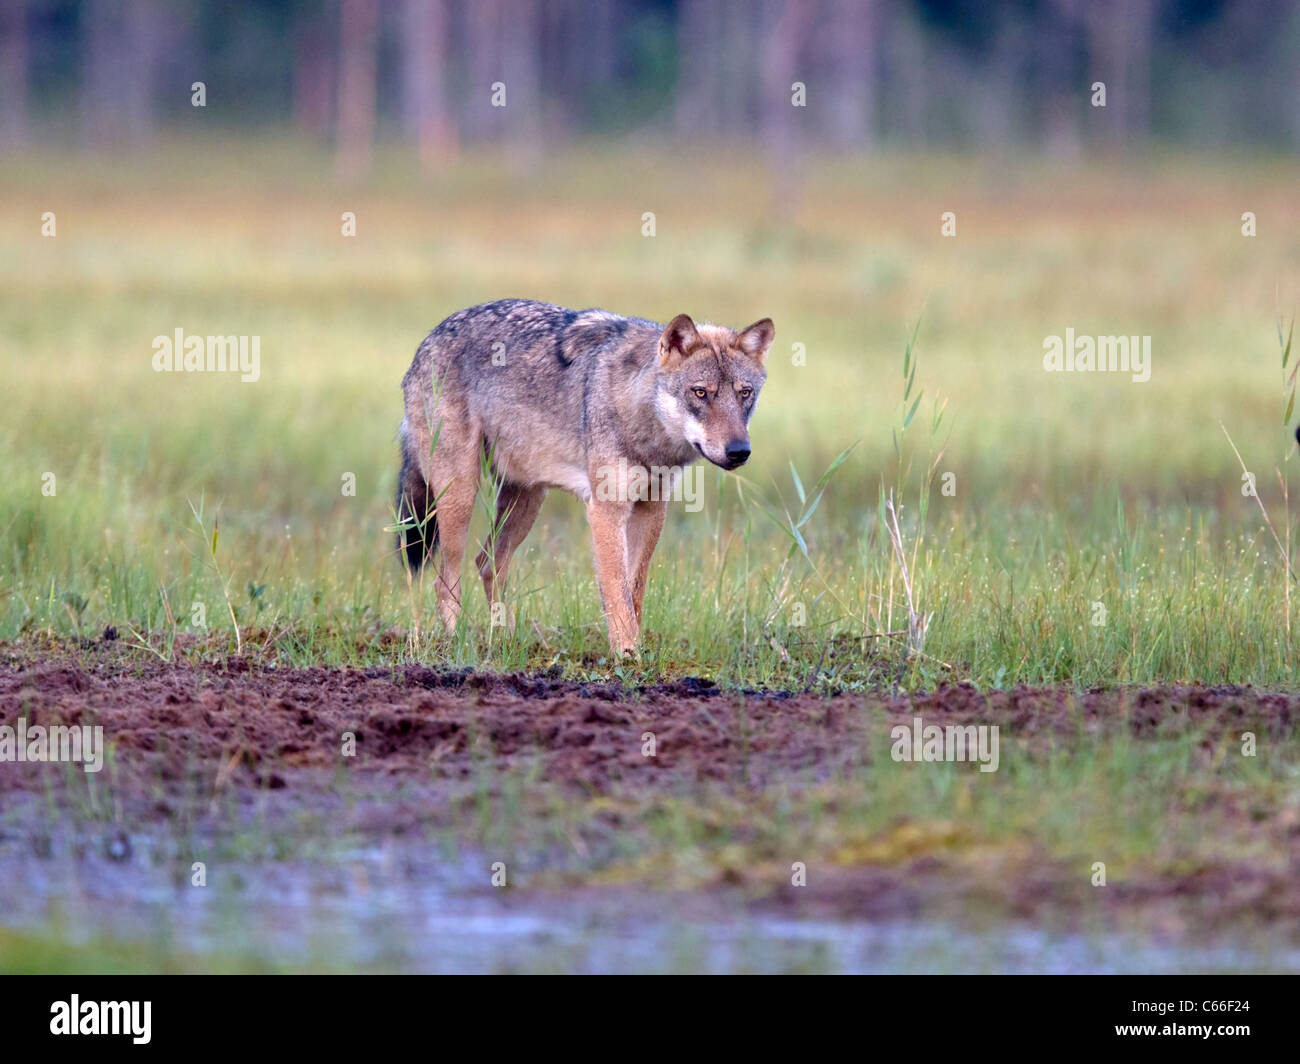 Europeo di lupo grigio nella radura Foto Stock